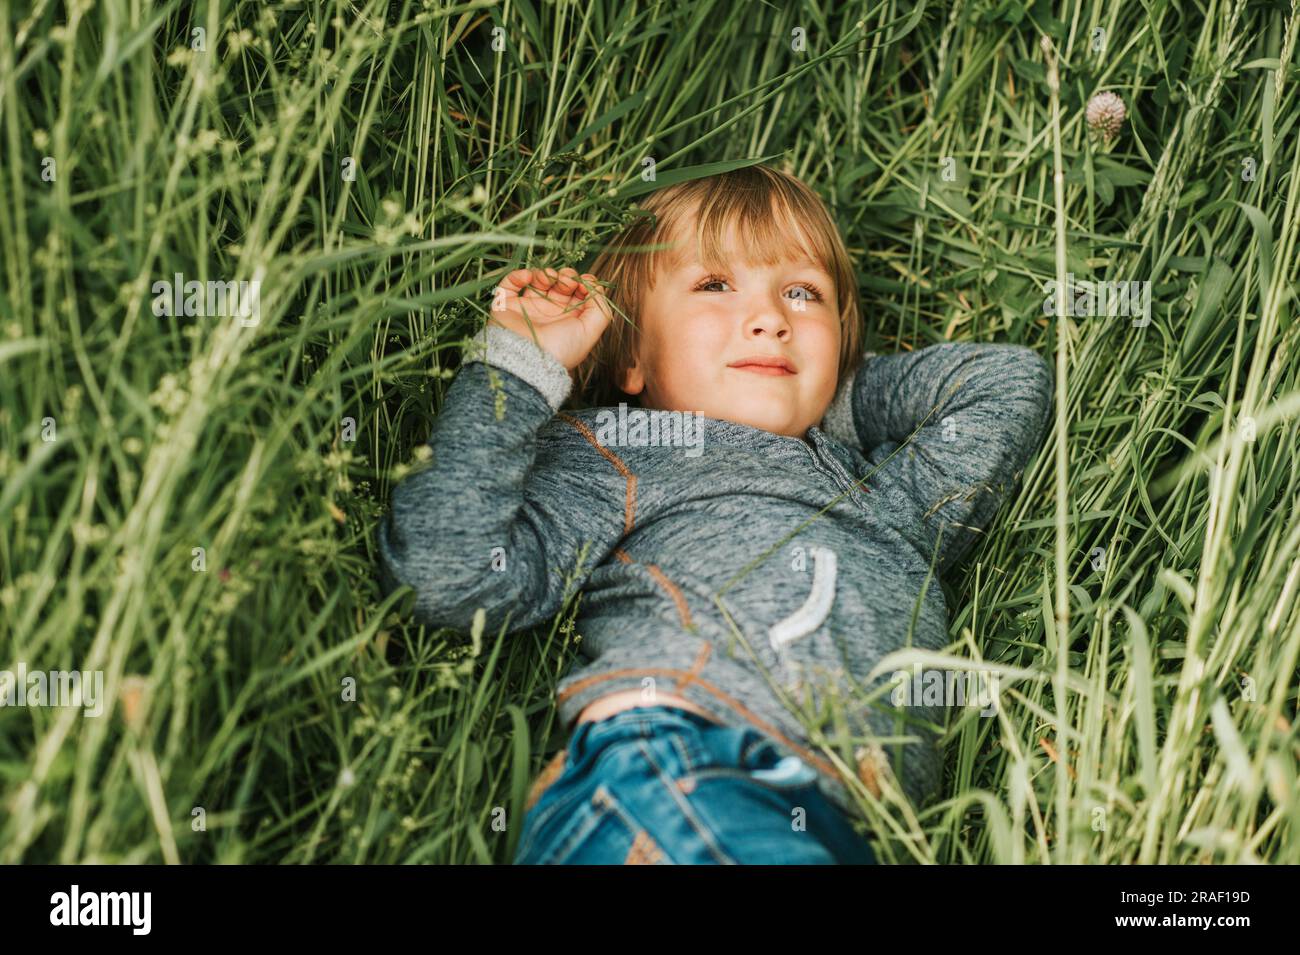 Ritratto sincero di un adorabile ragazzino di 4-5 anni, che indossa una felpa con cappuccio blu Foto Stock